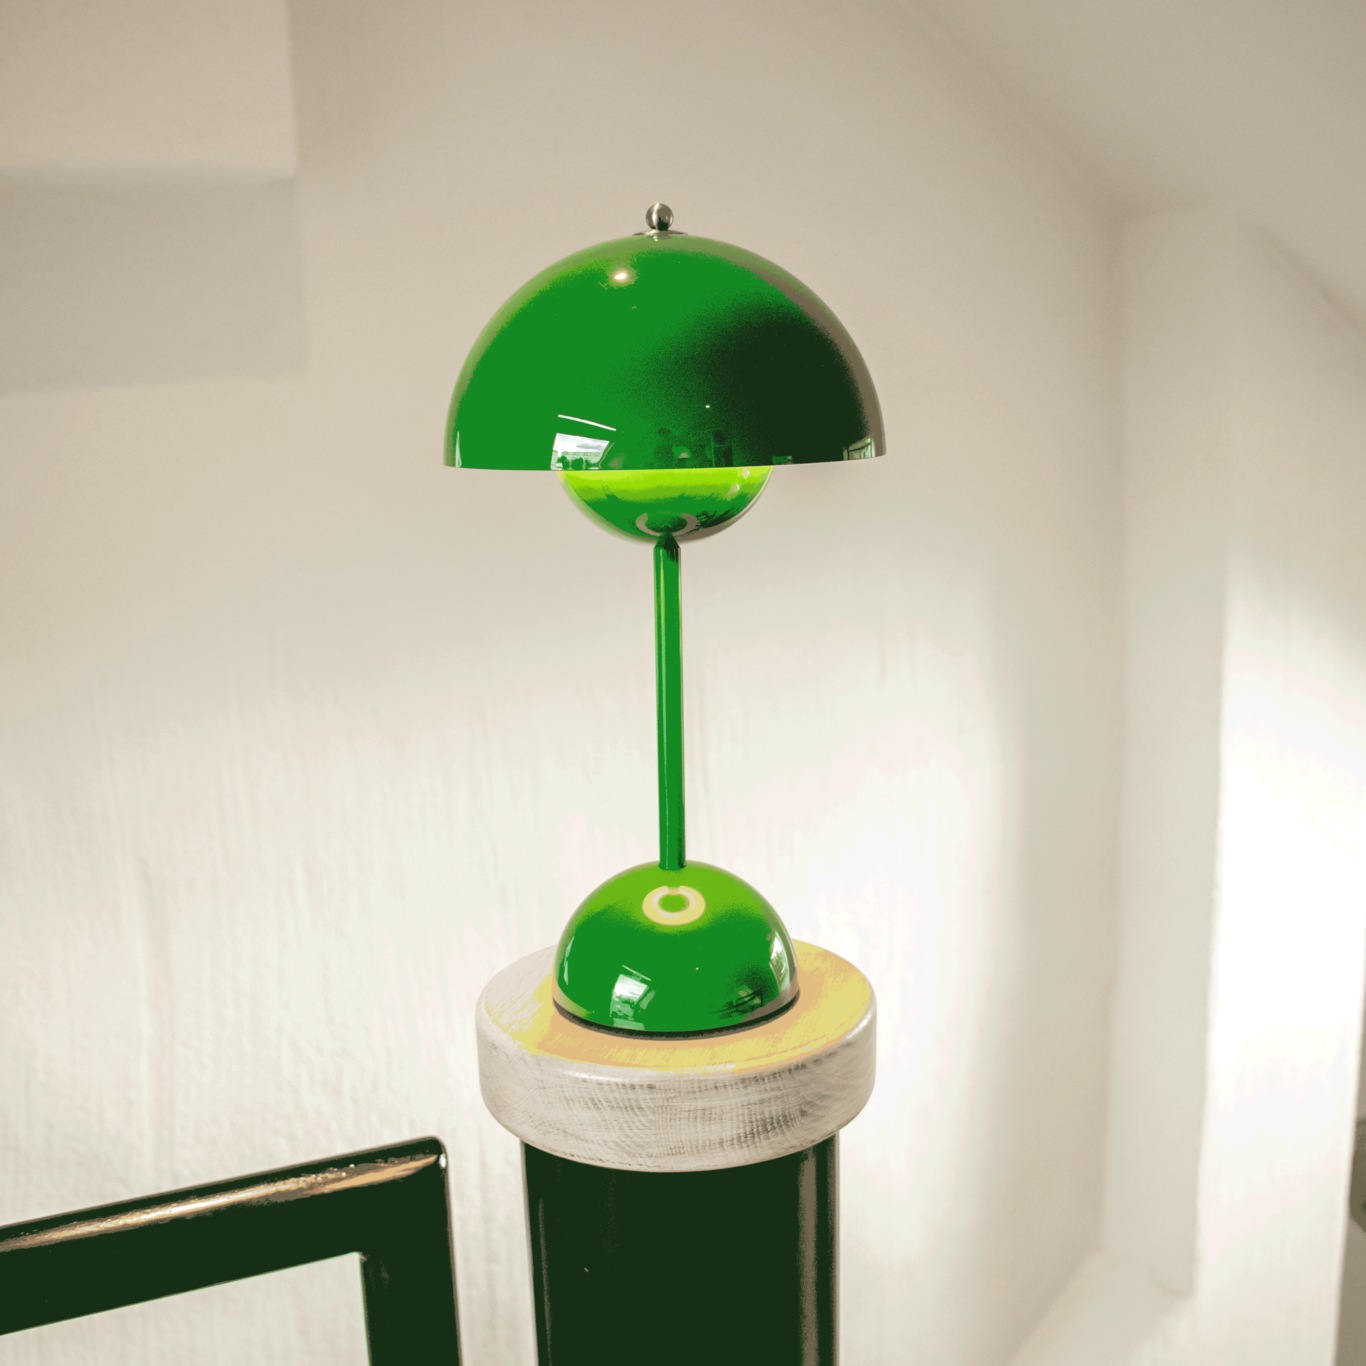 Flowerpot VP9 Bordslampa Portabel Med Magnetisk Laddningskabel, Signalgrön